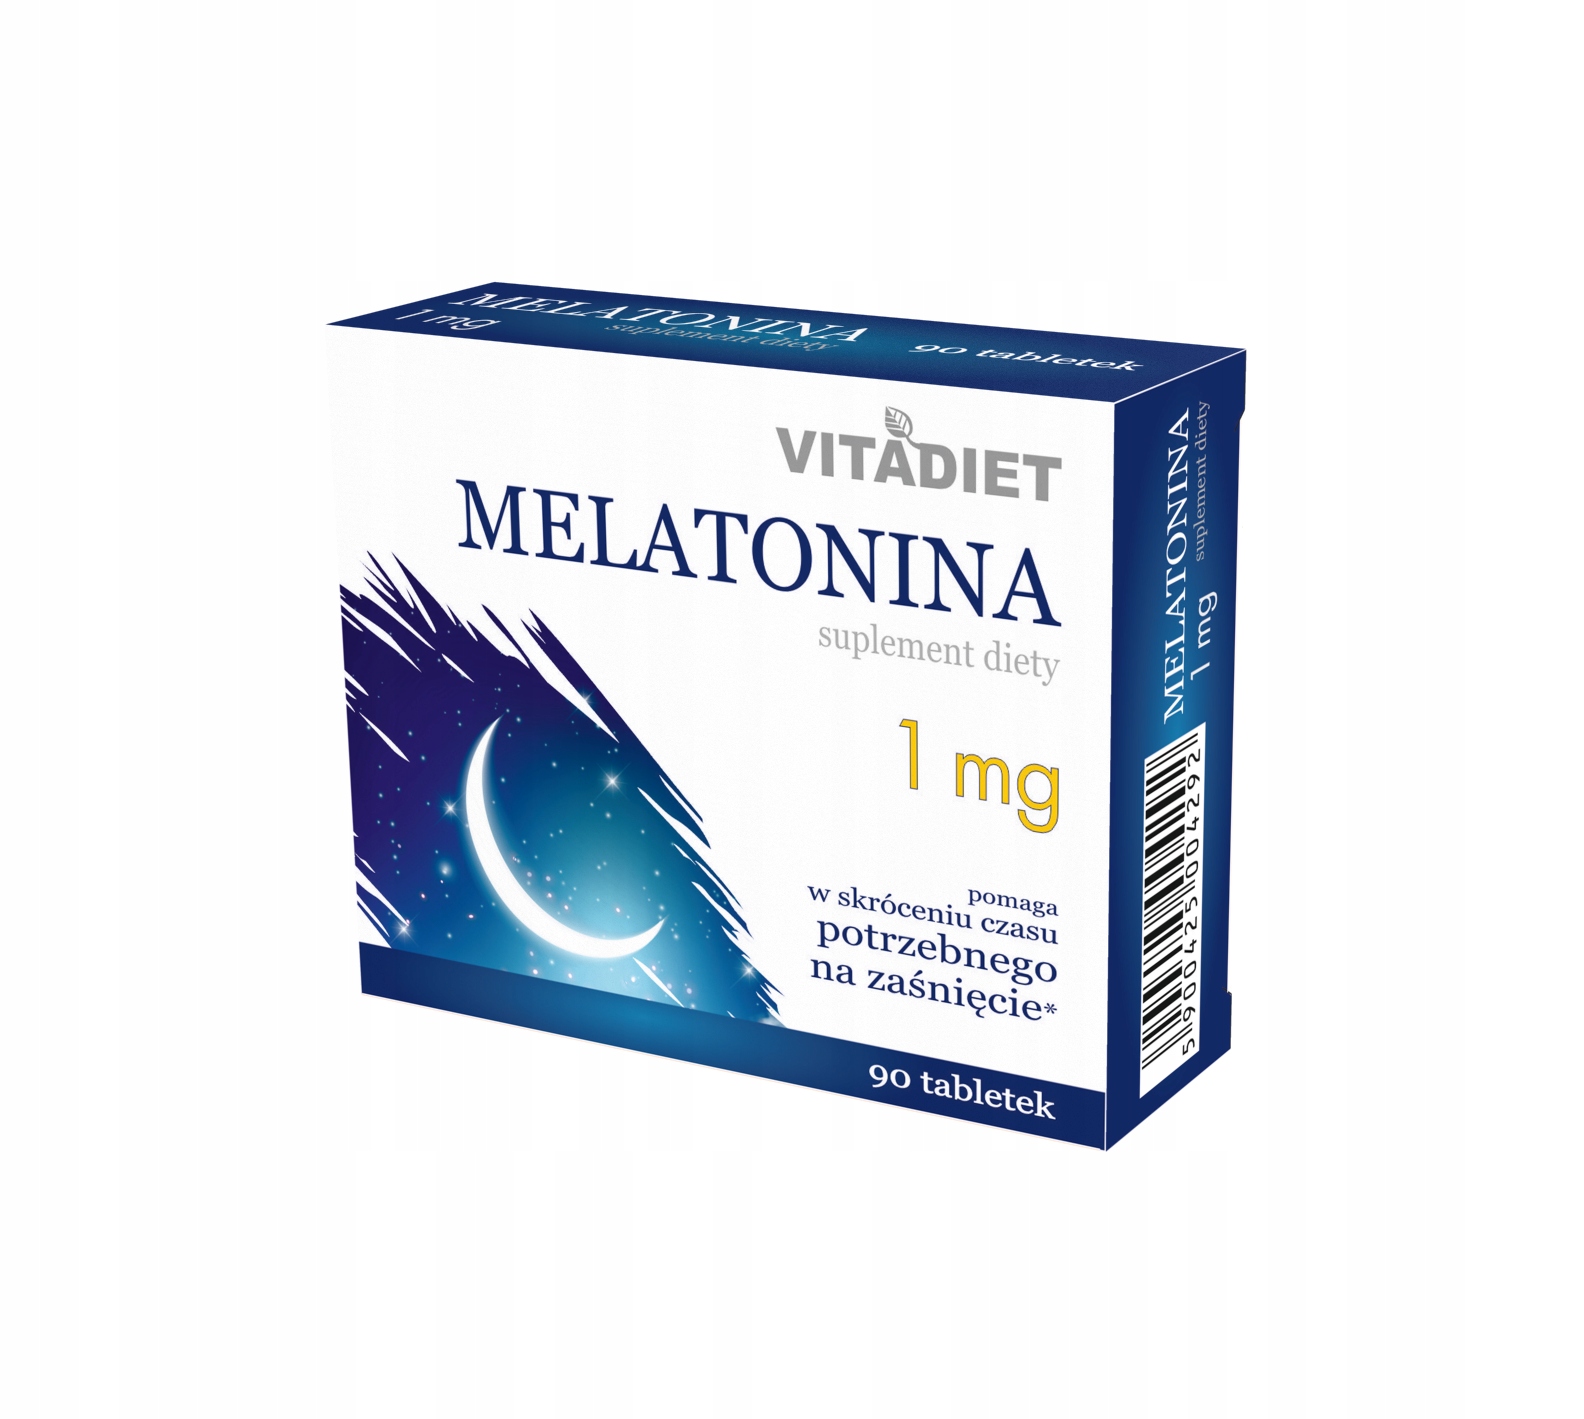 Мелатонин таблетки отзывы пациентов врачей. Мелатонин спокойный сон. Мелатонин отзывы врачей. Мелатонин Эвалар отзывы врачей. Мелатонин таблетки отзывы врачей.